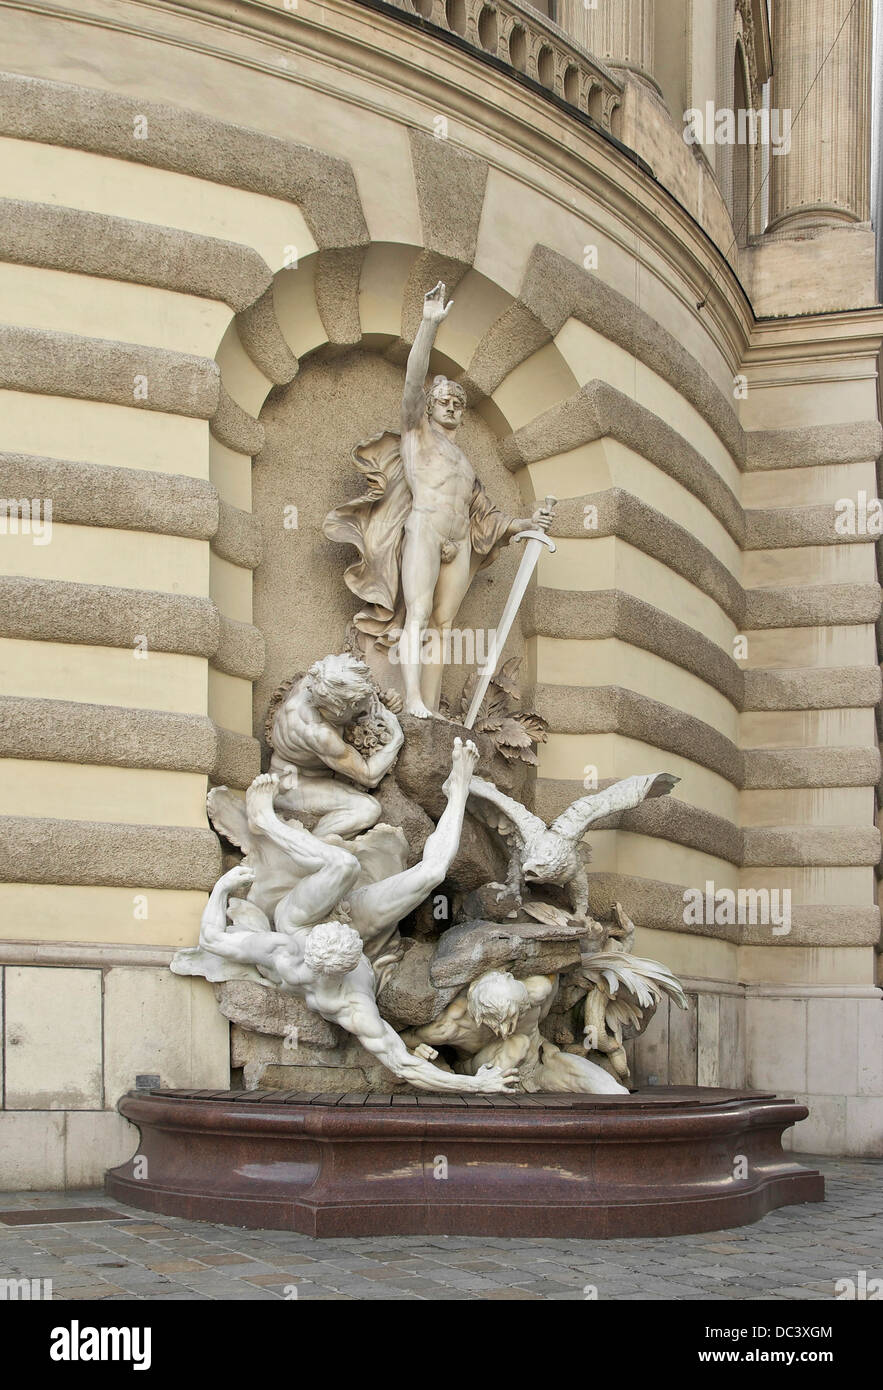 Die Macht zu Lande' fountain,Power over the Earth, by Edmund von Hellmer, detail 1897. Michaelertrakt, Hofburg Palace, Vienna, A Stock Photo